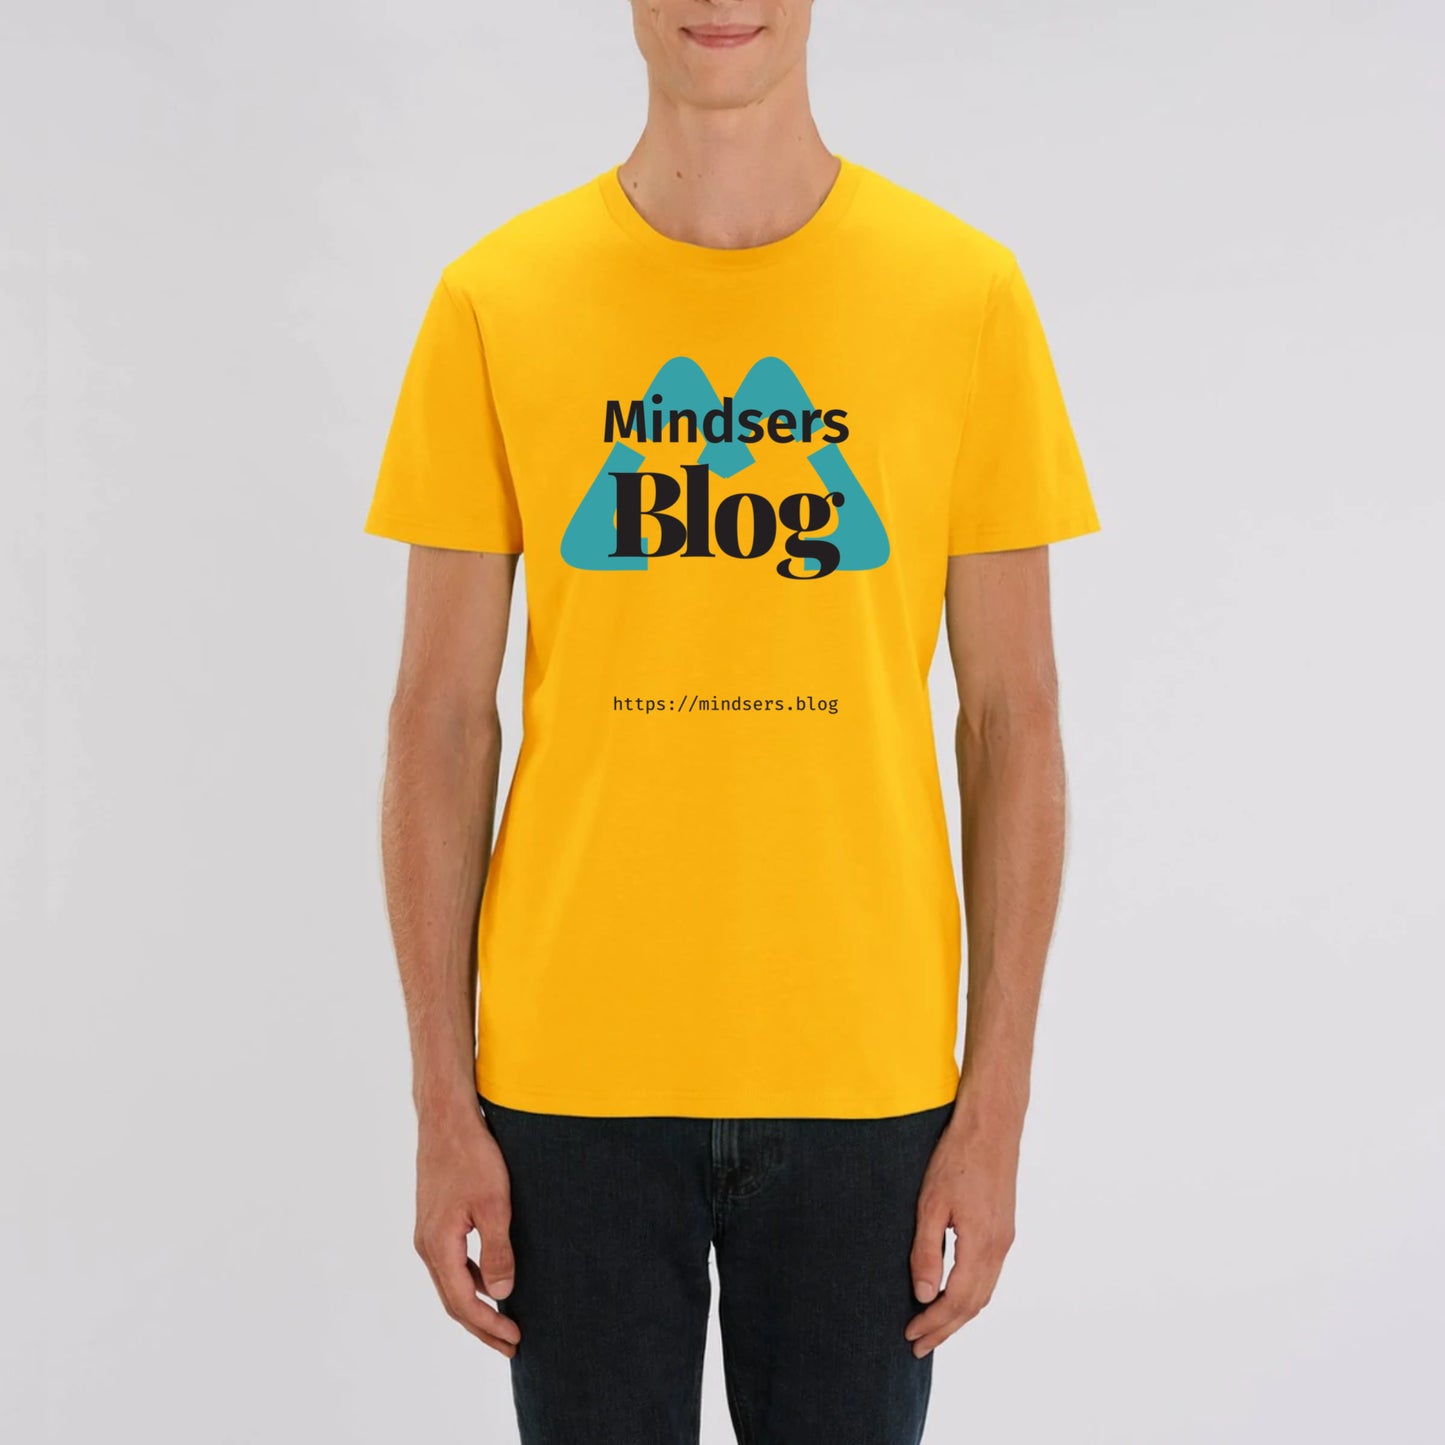 MBLOG Blue – t-shirt, unisexe, bio